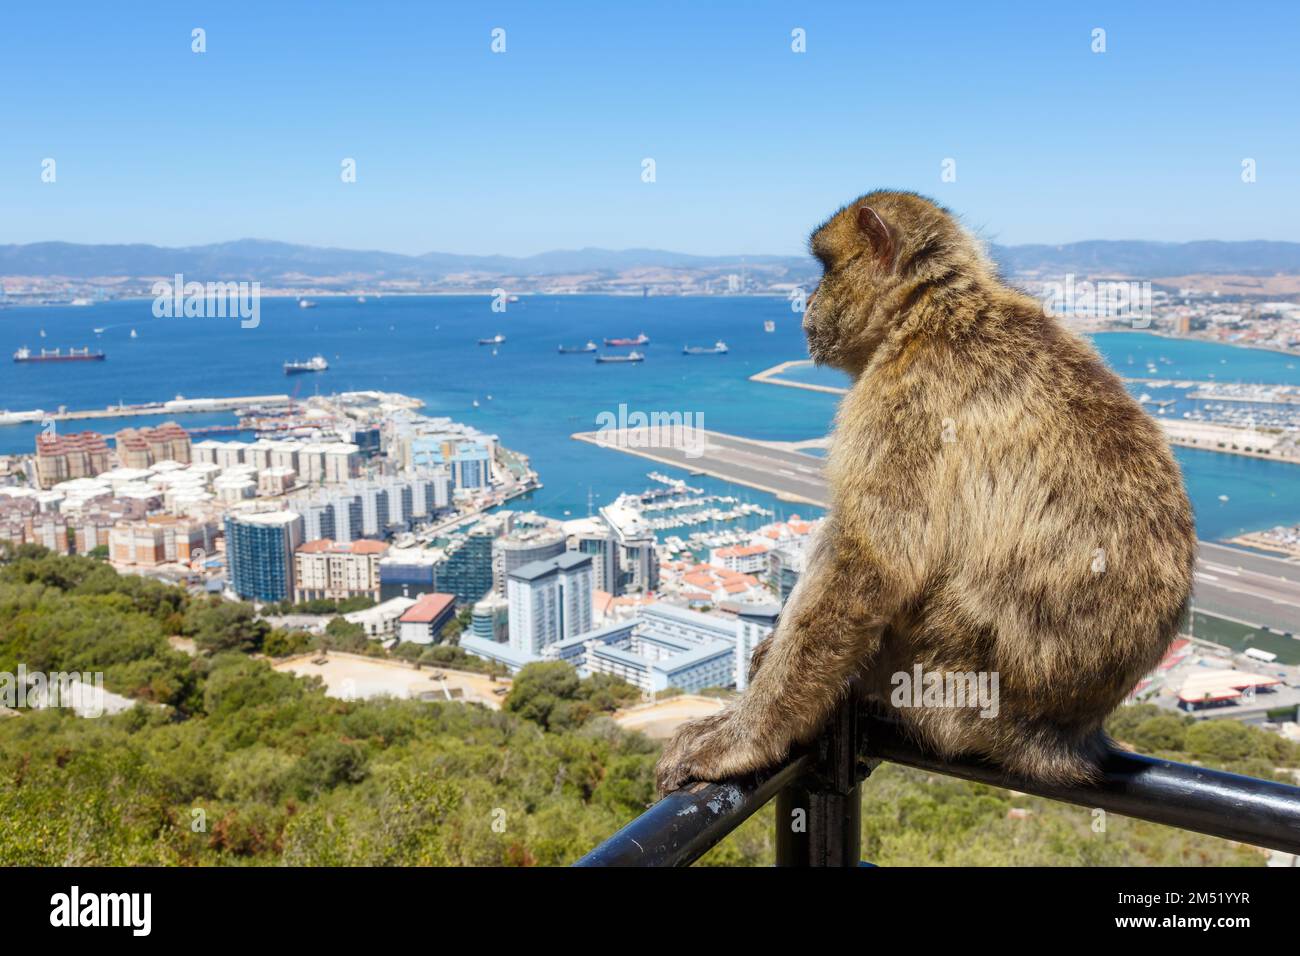 Gibraltar monkey monkeys port airport travel traveling Spain travelling Stock Photo